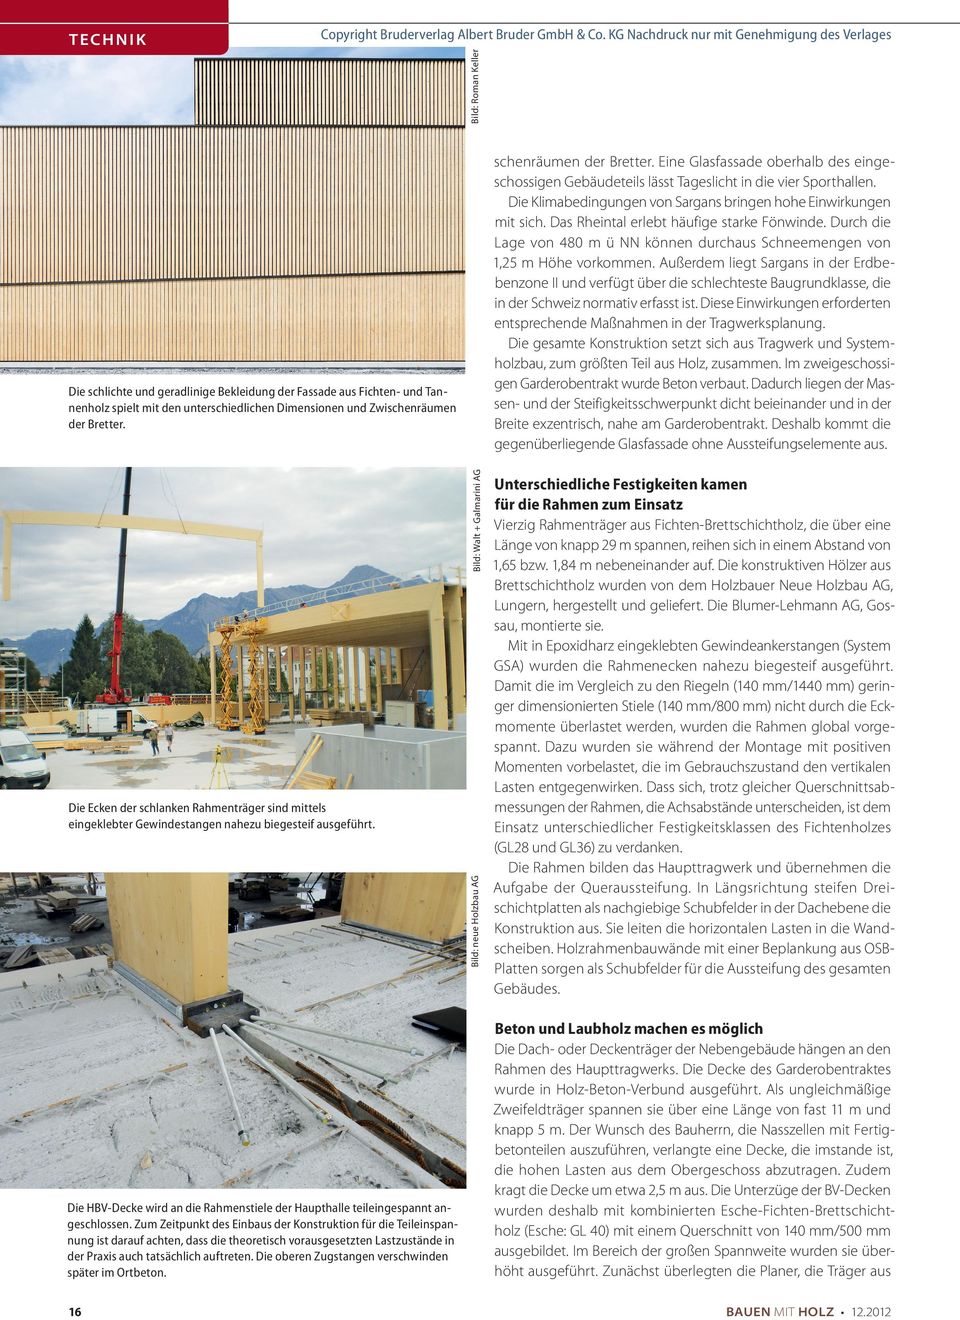 Außerdem liegt Sargans in der Erdbebenzone II und verfügt über die schlechteste Baugrundklasse, die in der Schweiz normativ erfasst ist.